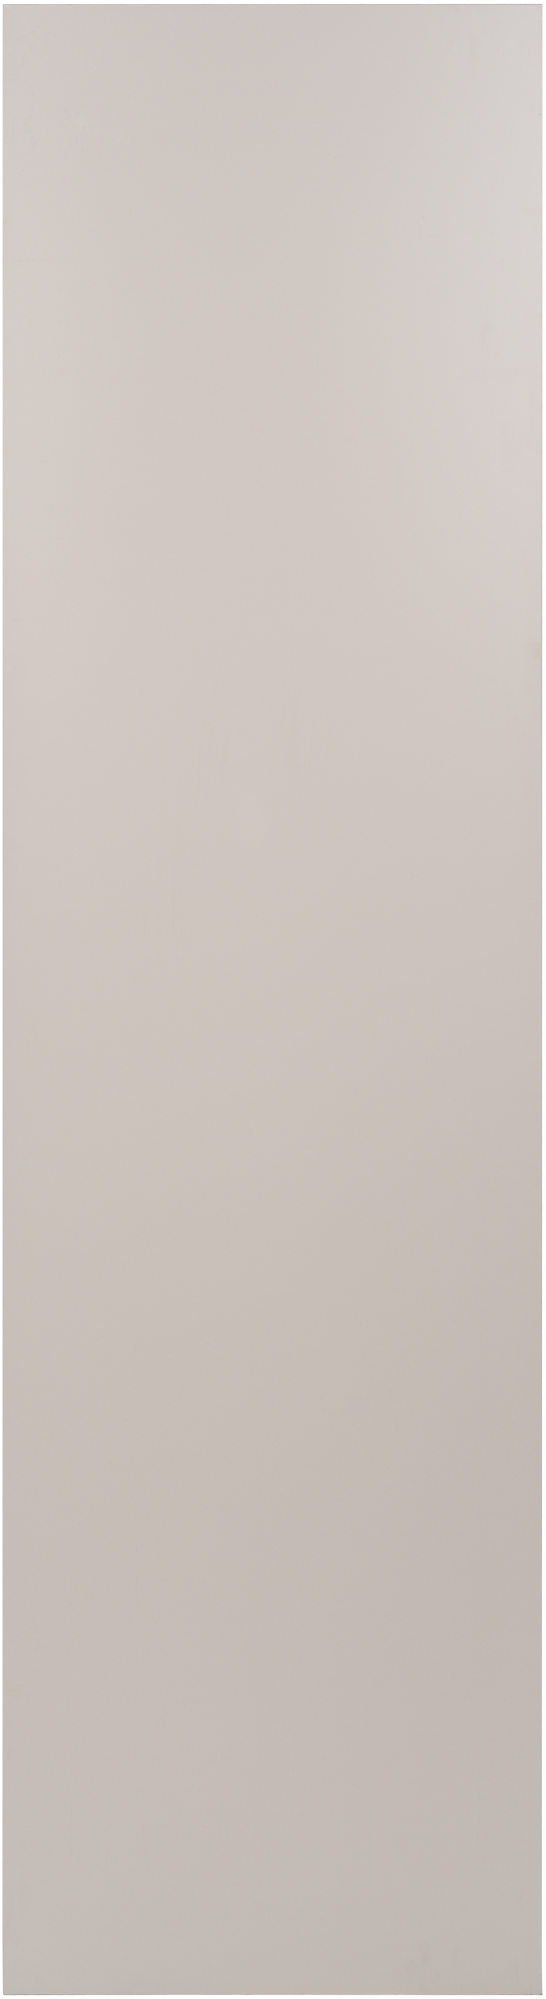 Costado delinia id mikonos marrón brillo 60x236,4 cm